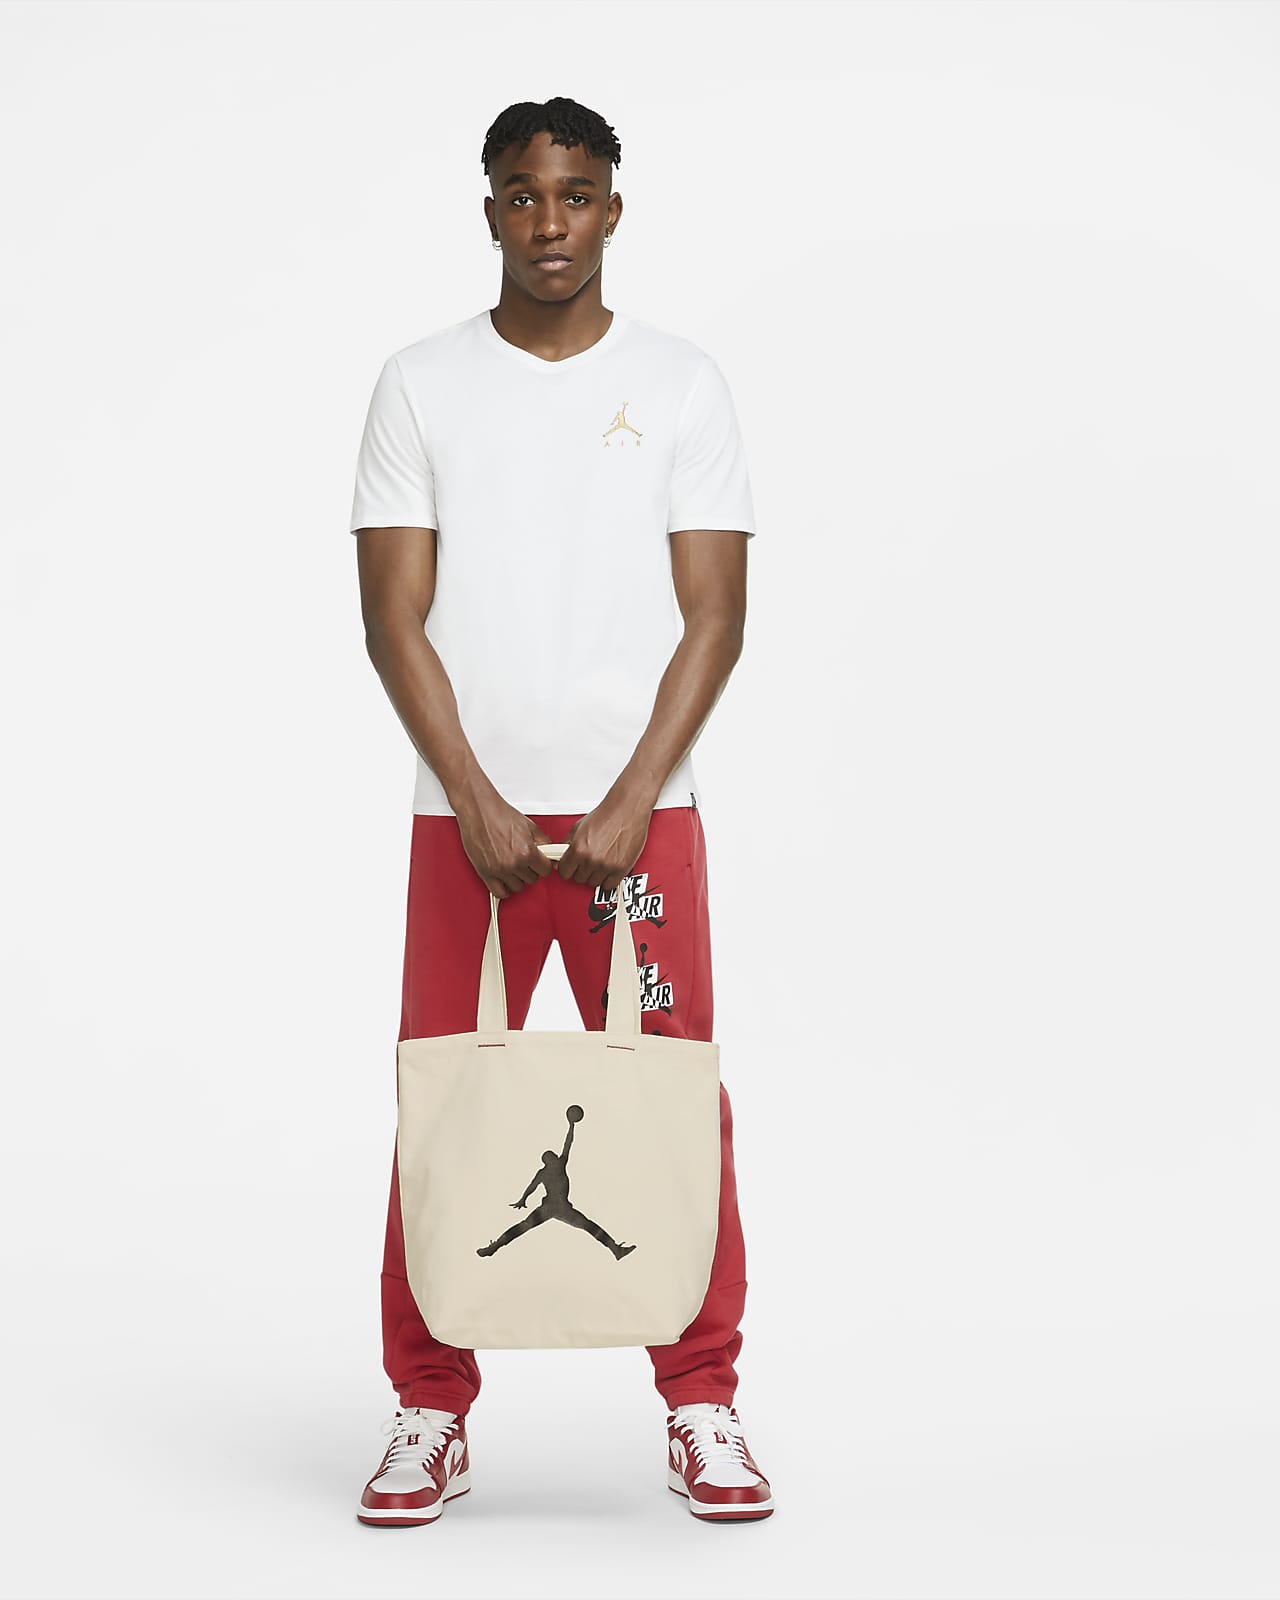 Jordan Graphic Tote Tote Bag. Nike LU